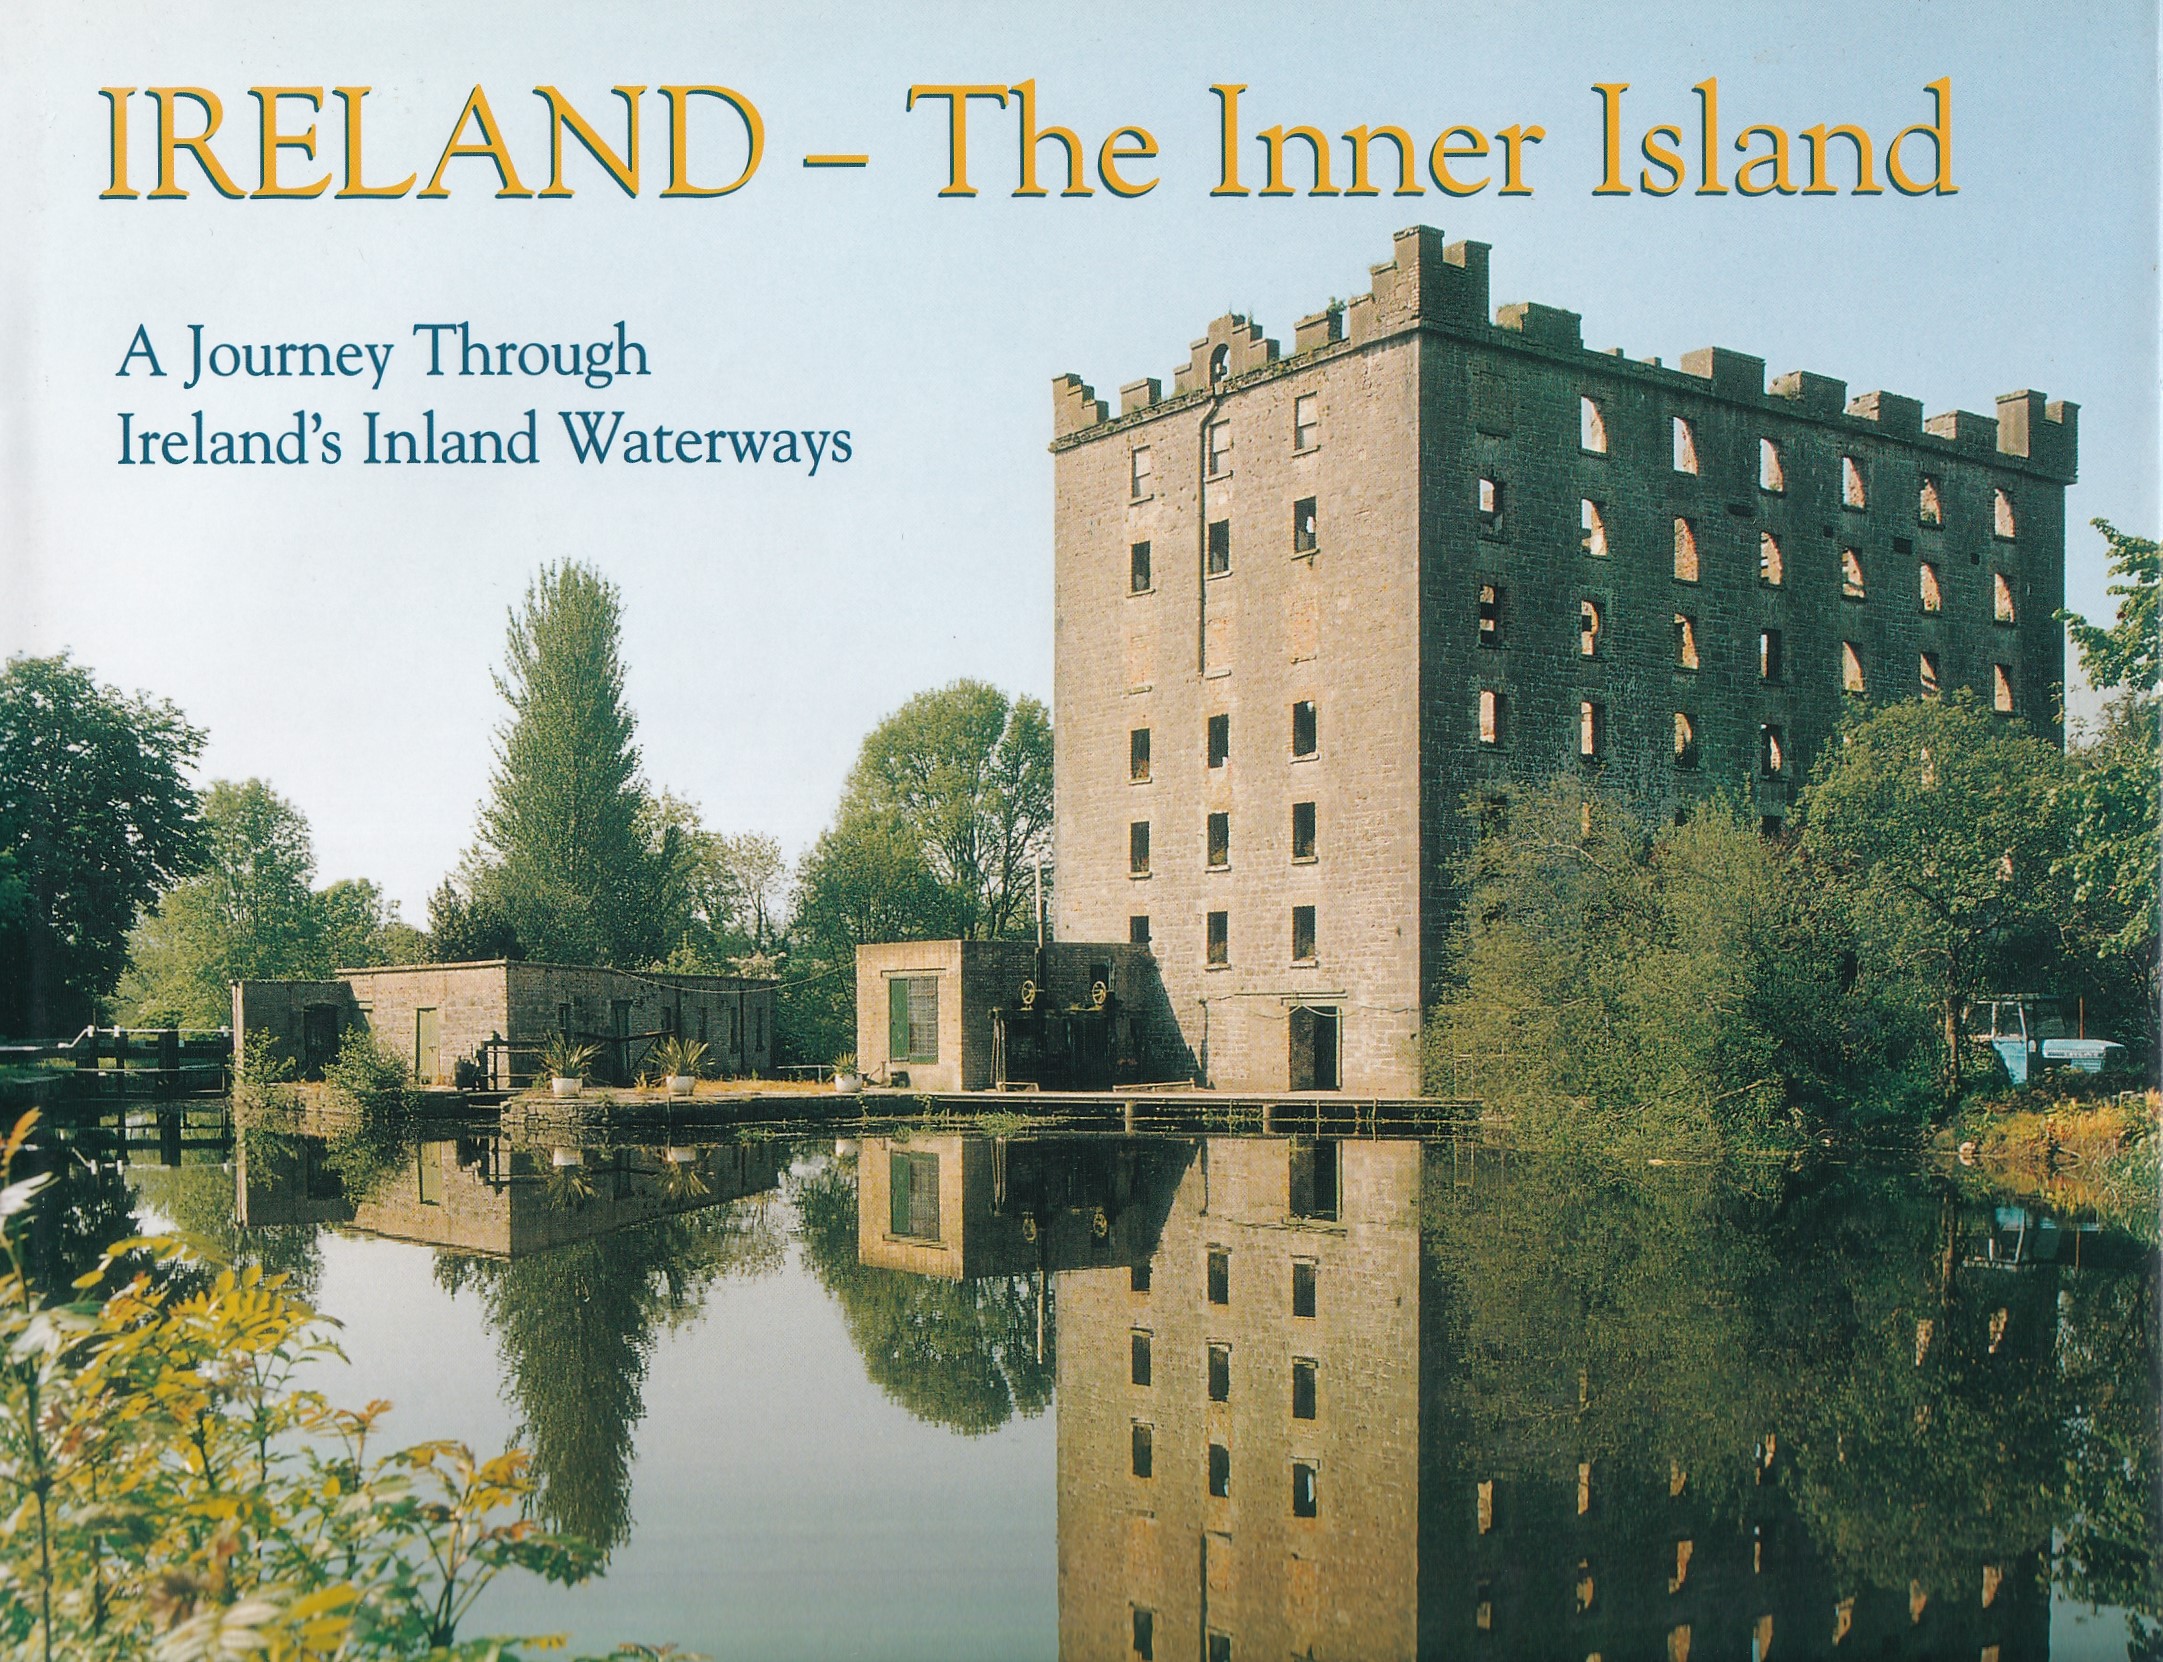 Ireland-The Inner Island: A Journey Through Ireland’s Inland Waterways by Dwyer, Kevin